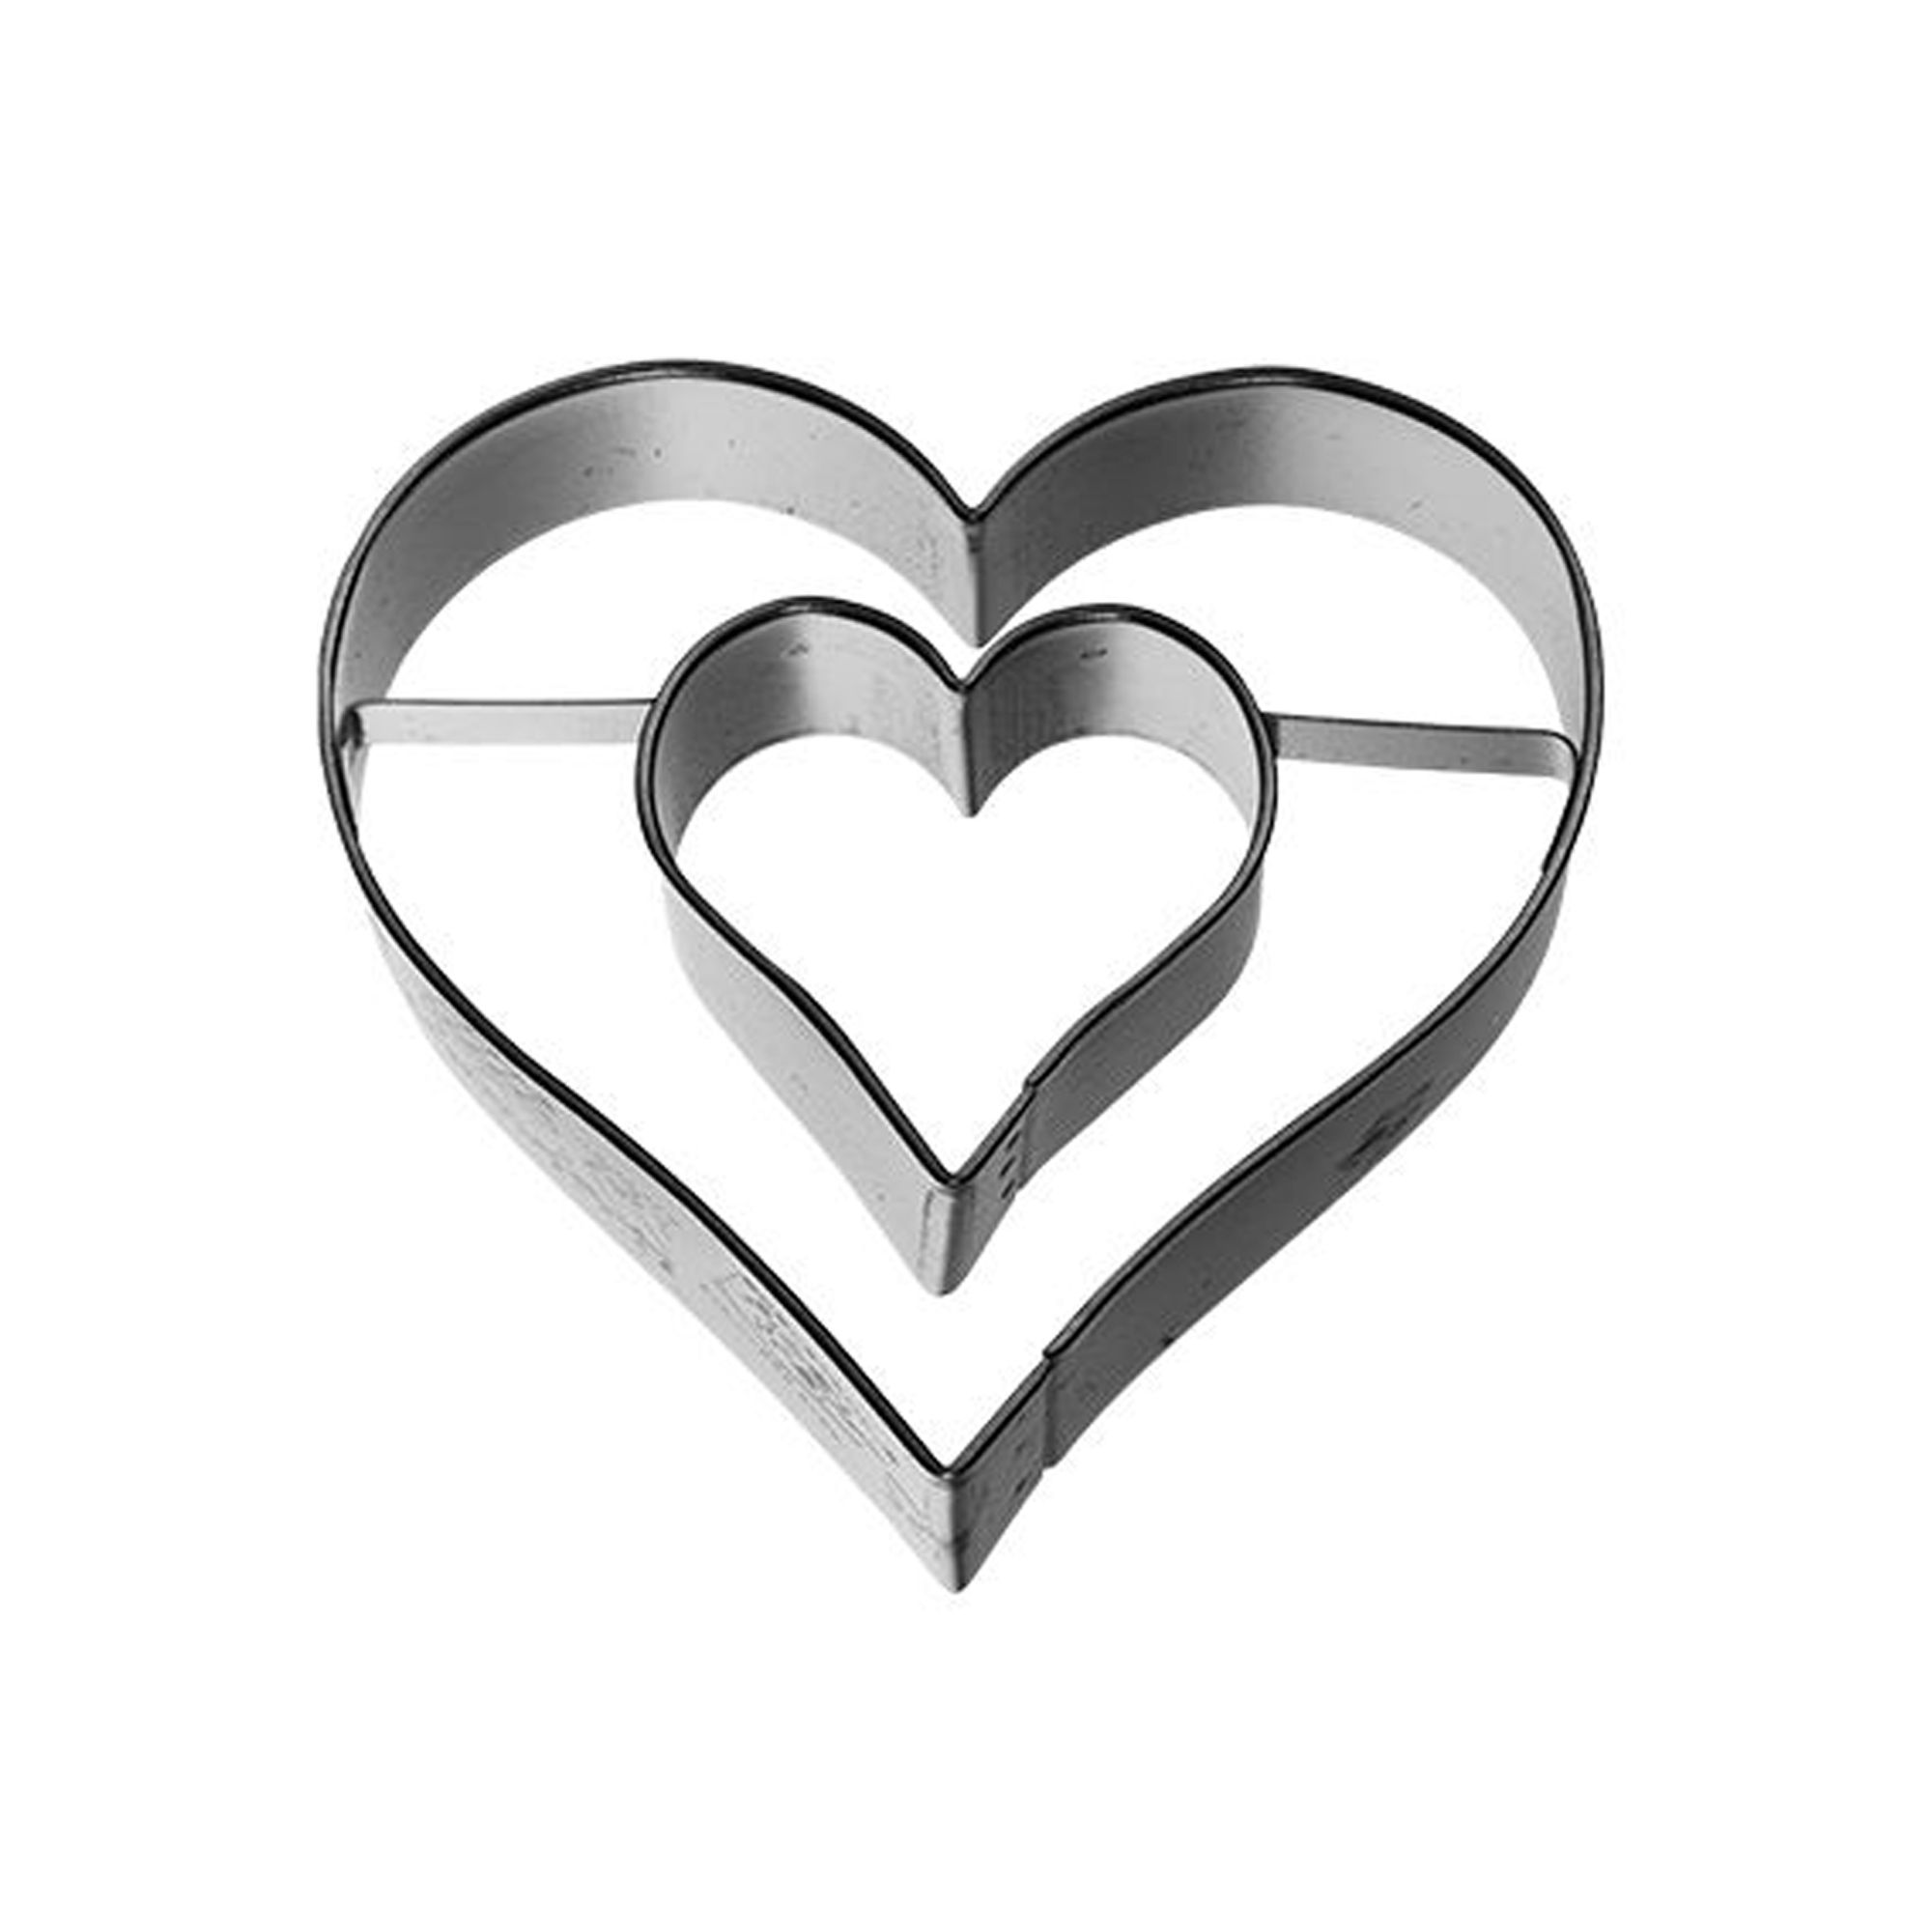 RBV Birkmann - Cookie cutter heart with inner heart, 6 cm